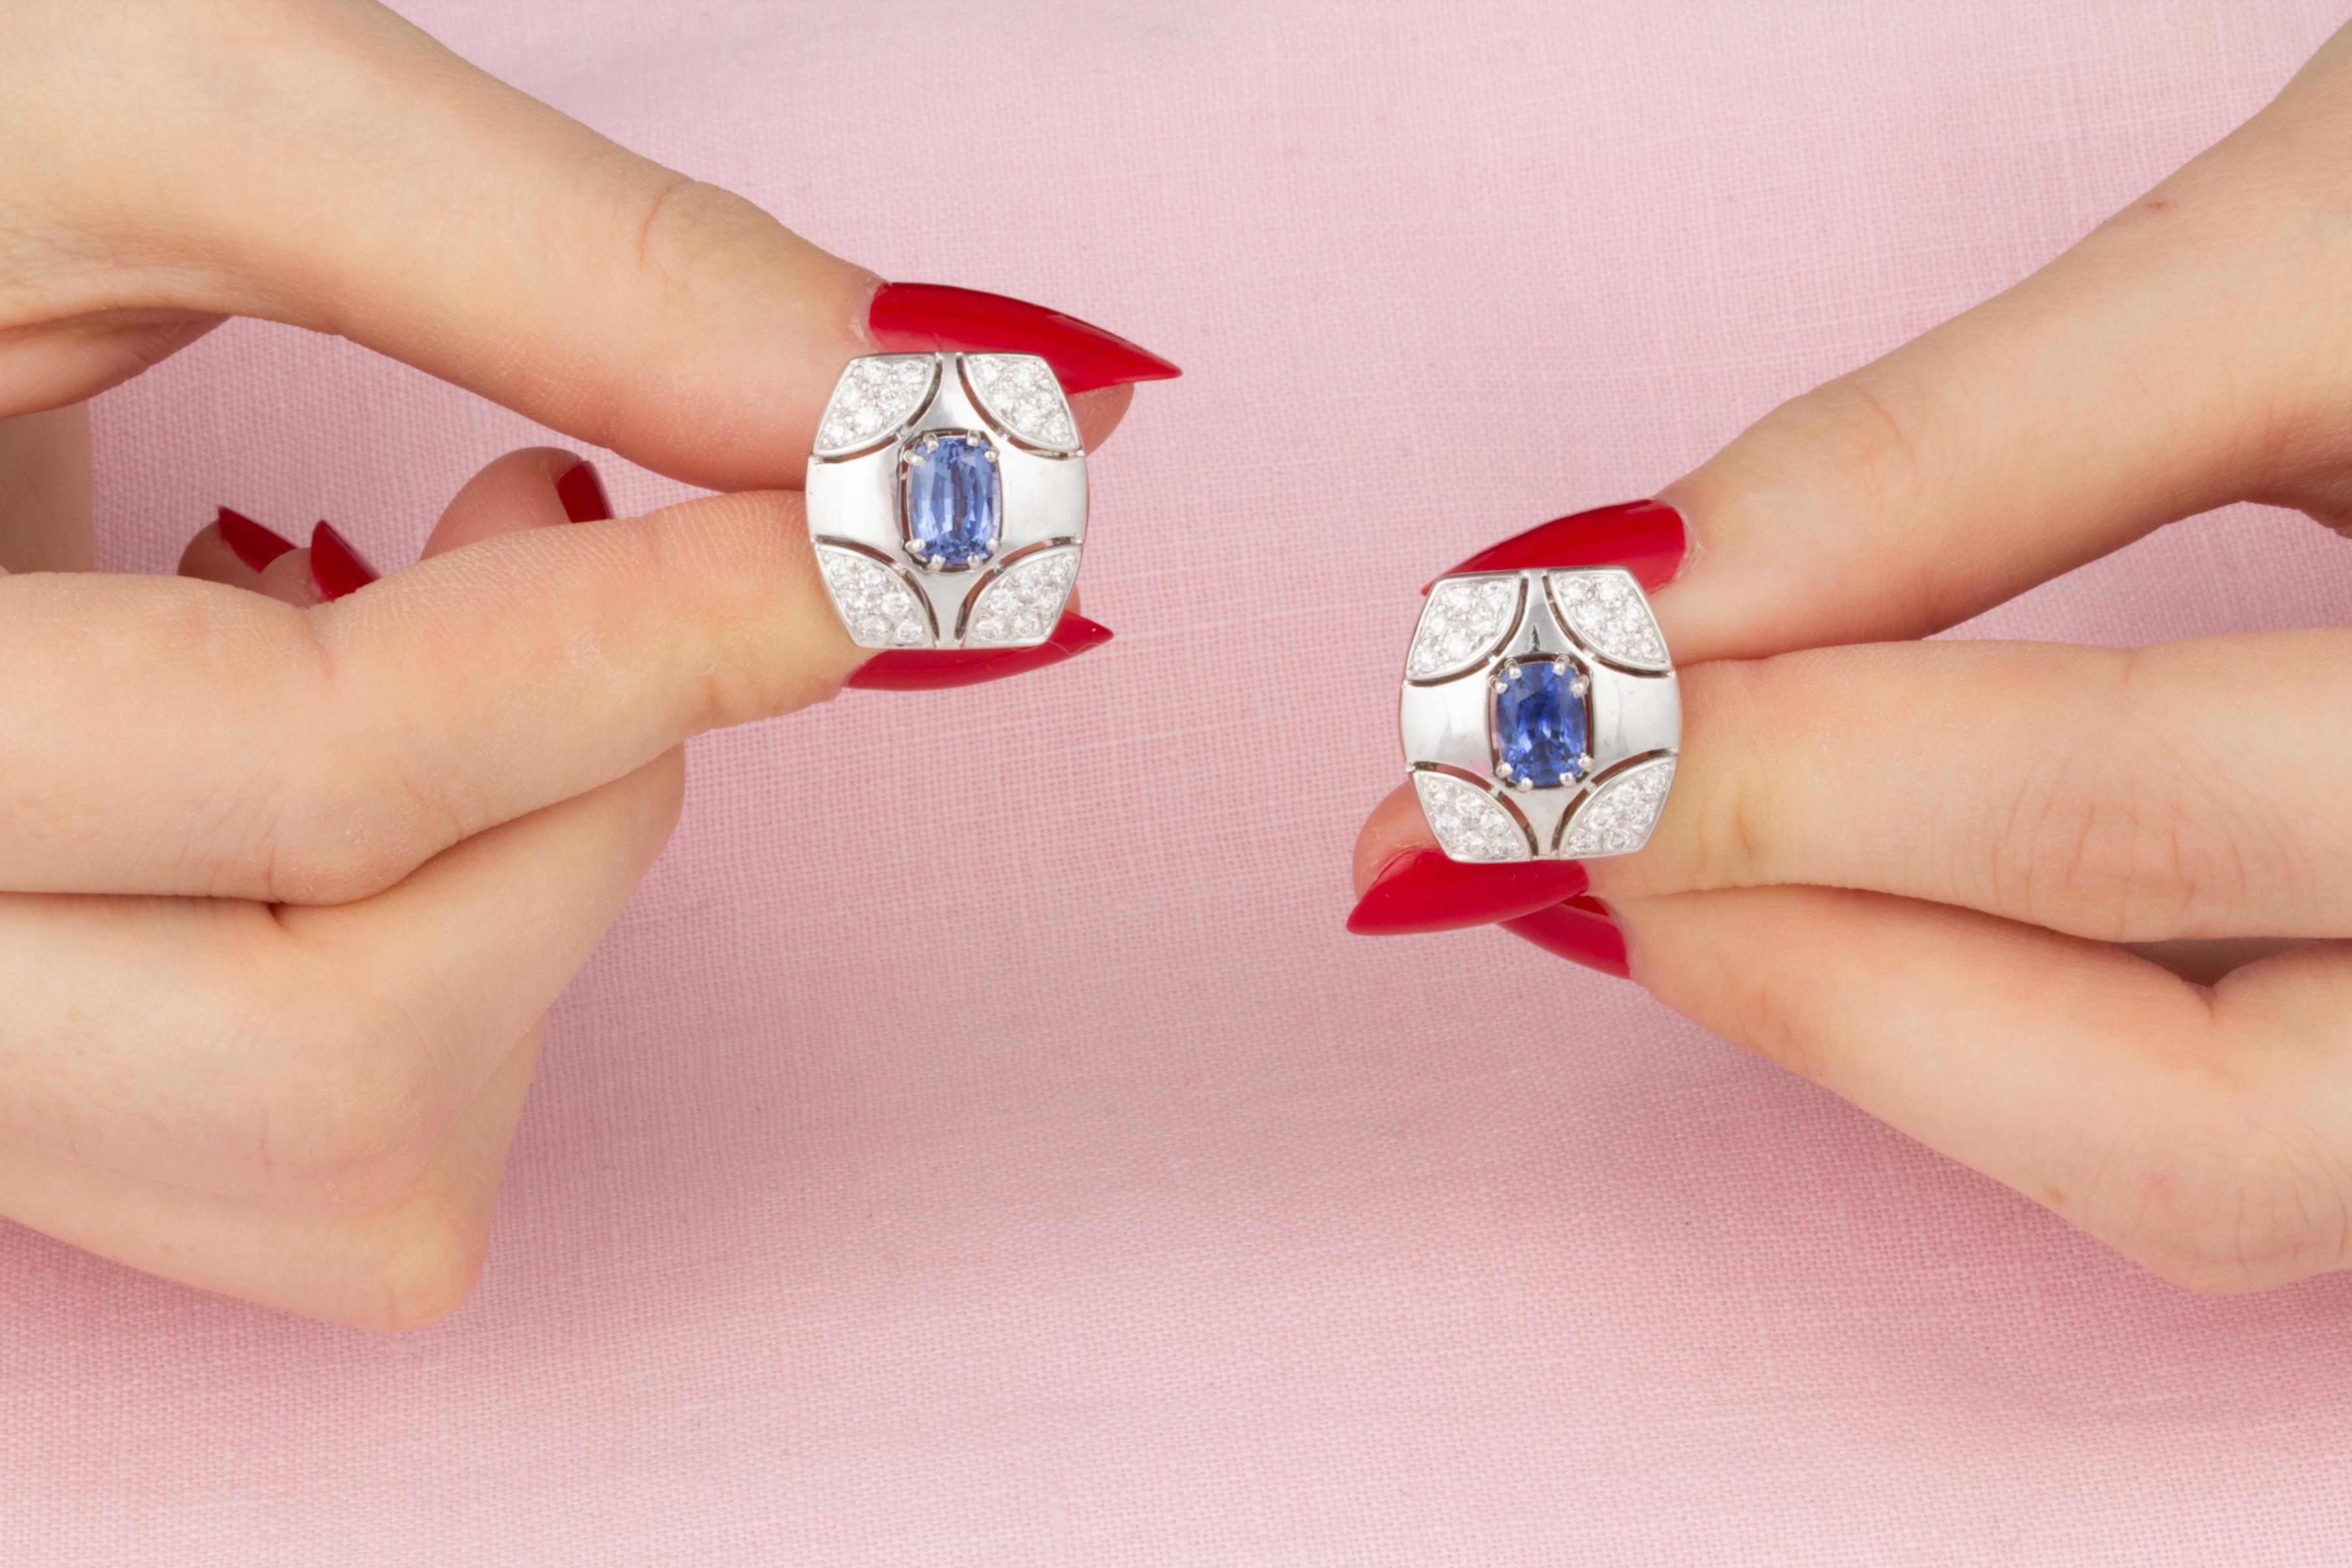 Les boutons de manchette en saphir bleu et diamant comportent 2 saphirs bleus de Ceylan de forme ovale pour un poids total approximatif de 1,80 carats. Le design est complété par 0,60 carats de diamants de qualité supérieure (couleur, clarté et